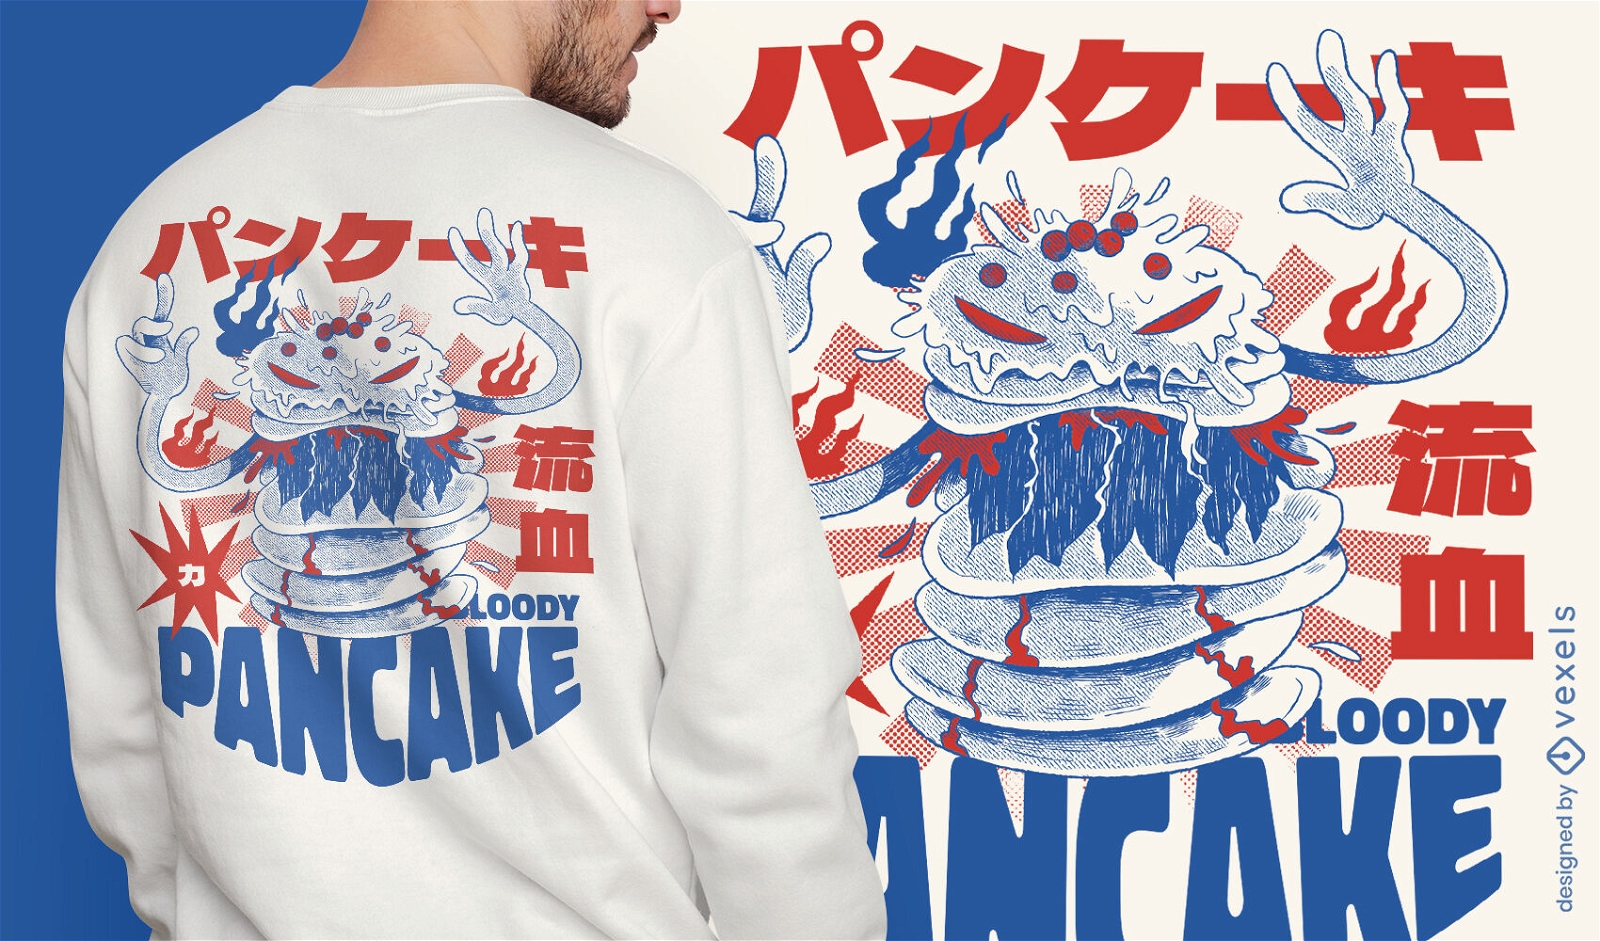 Pancake food monster t-shirt design